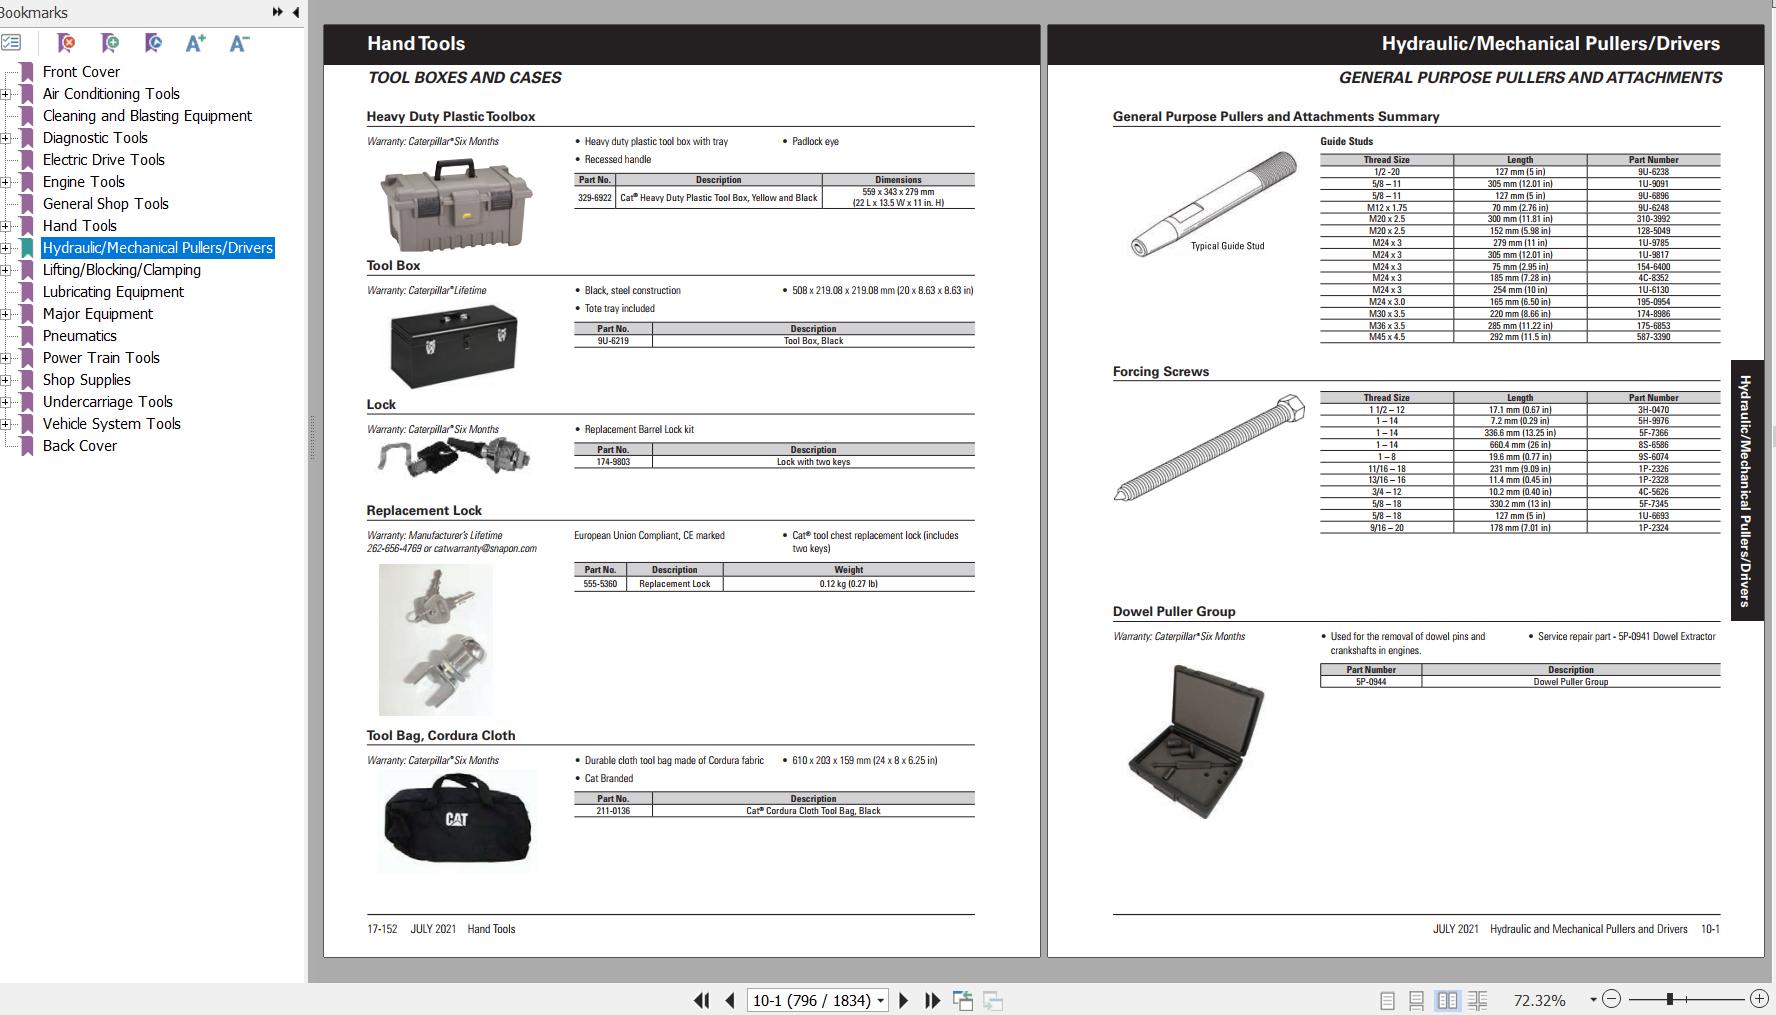 CAT Dealer Service Tools Catalog Includes Hand Tools & Shop Supplies